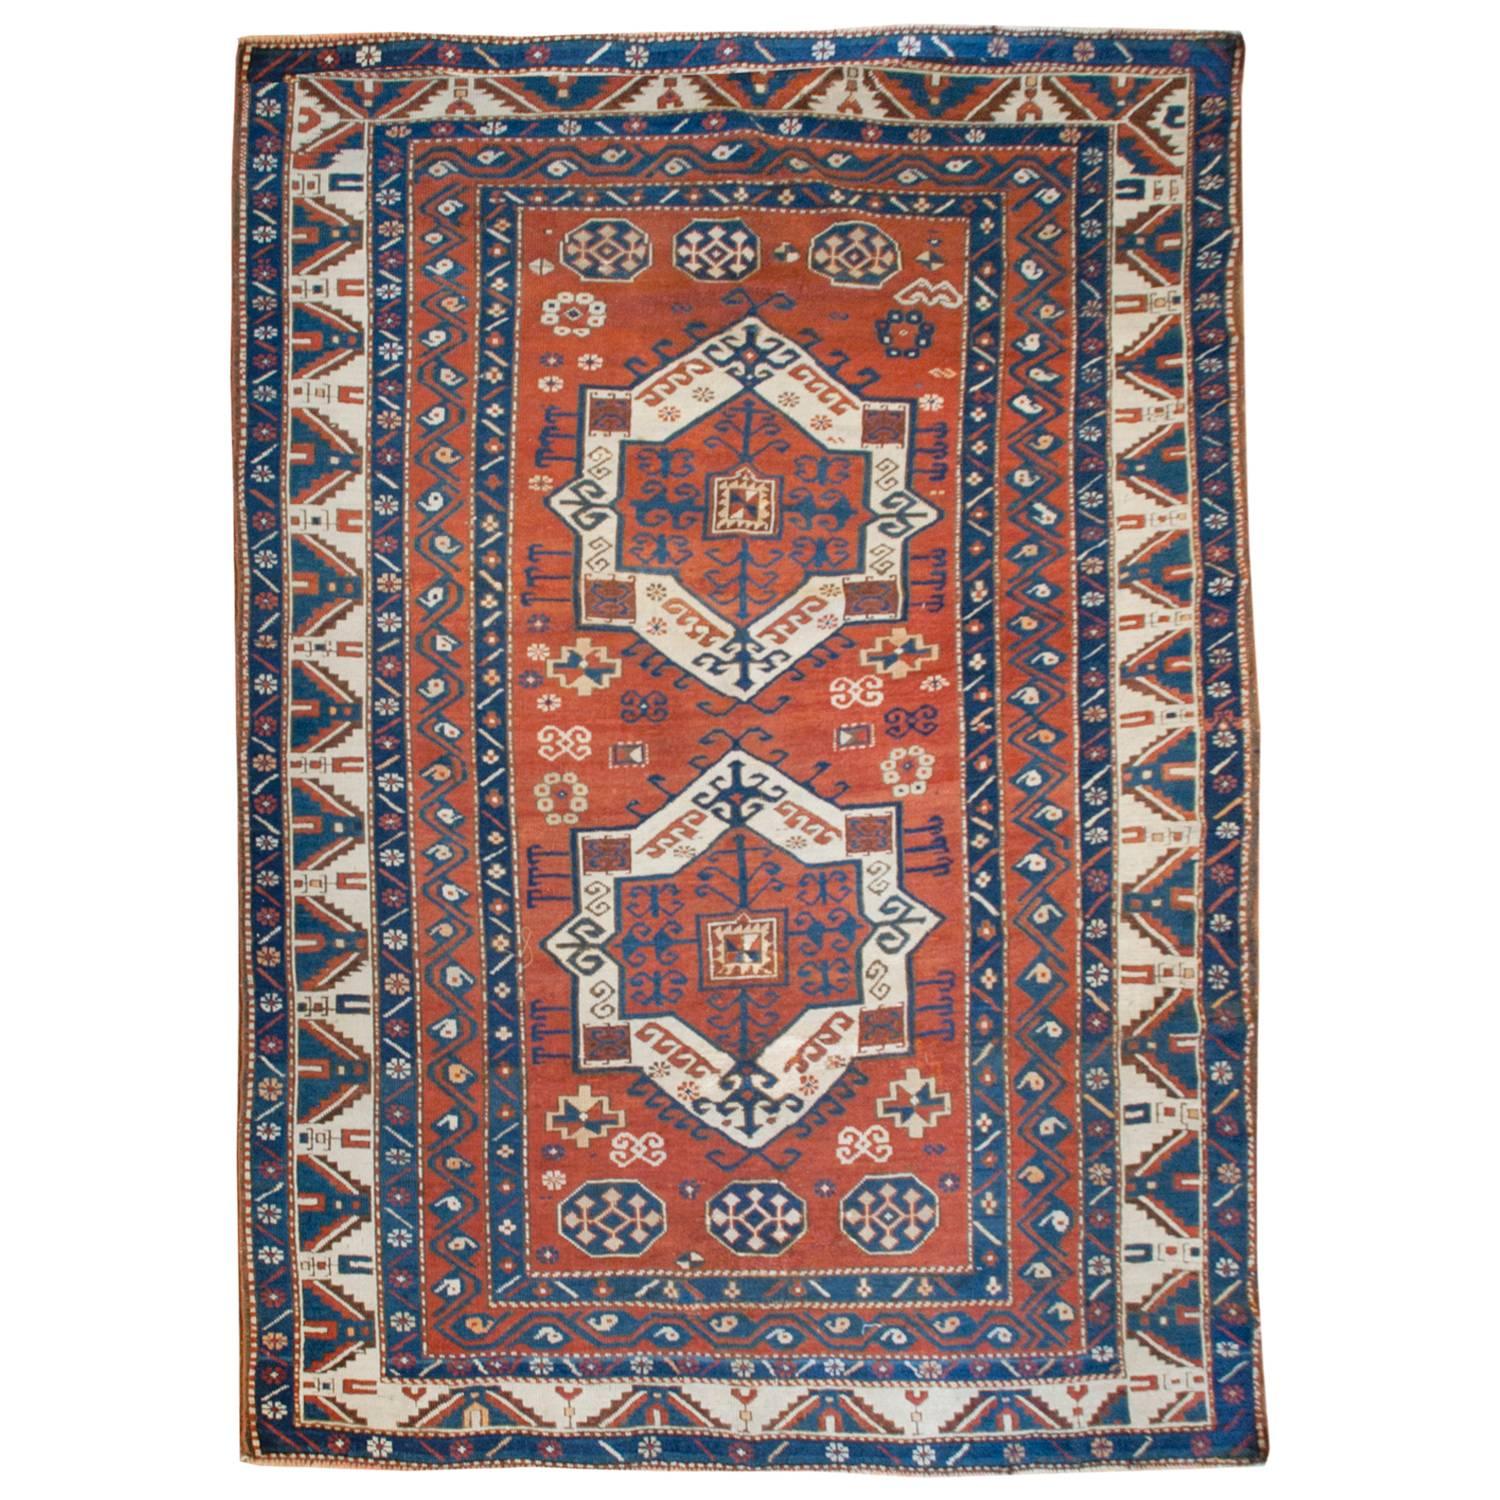 Fachralo-Kazak-Teppich aus dem 19. Jahrhundert, interessant